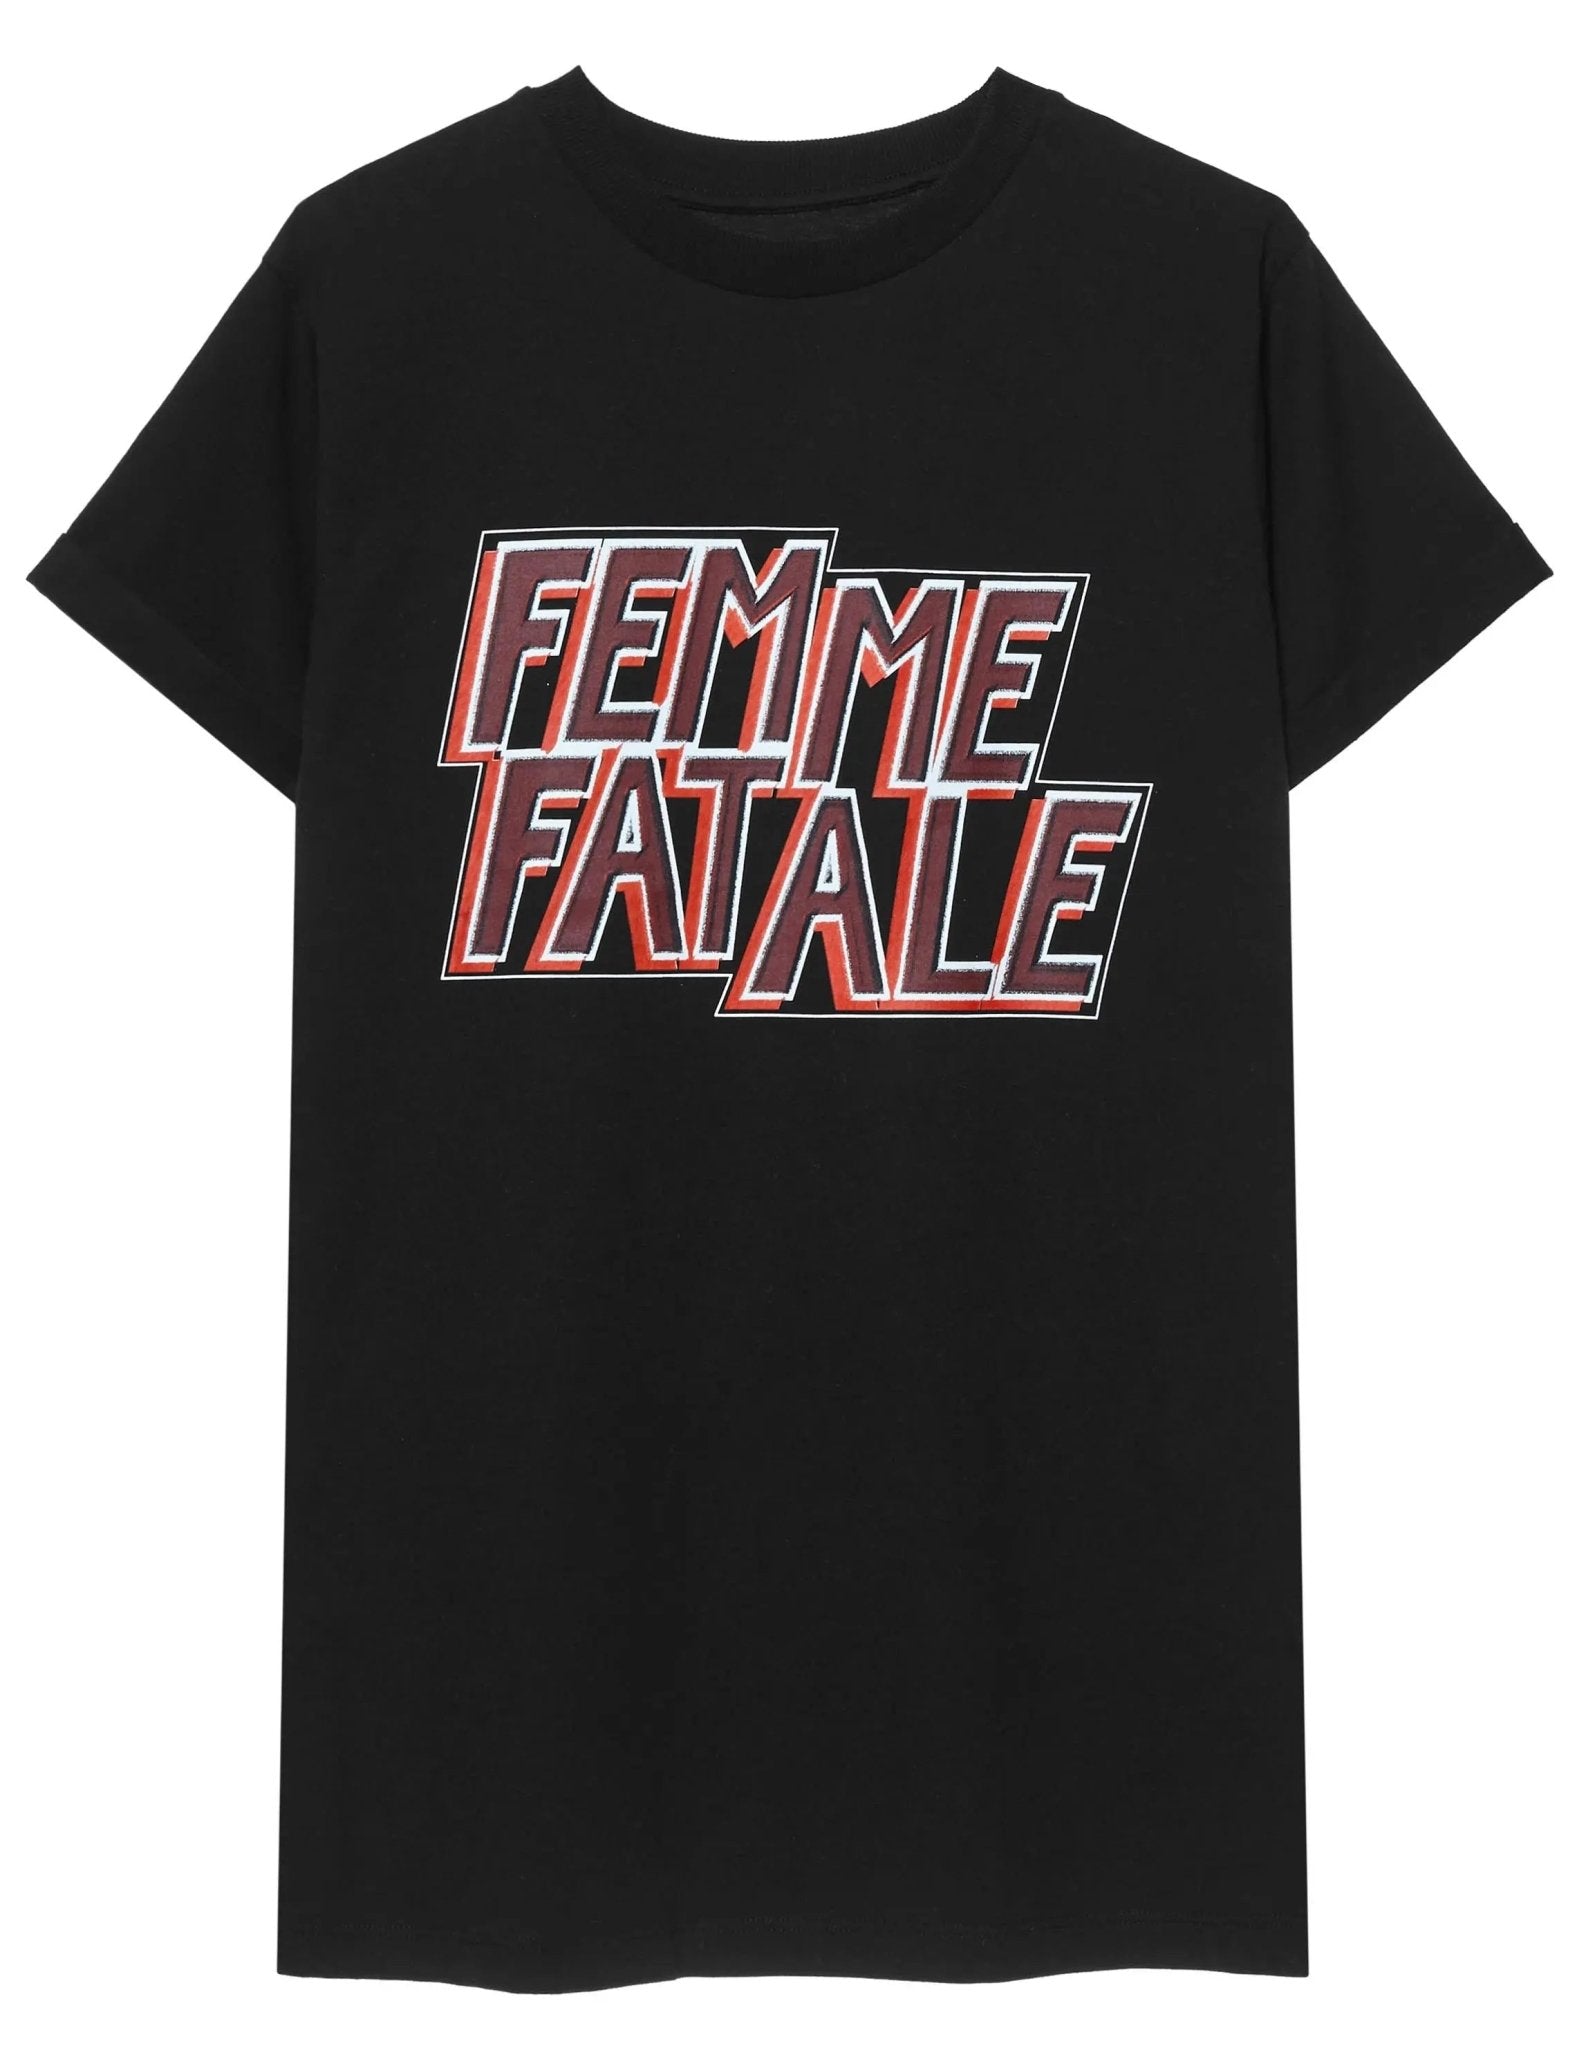 Regulatie Inloggegevens Patriottisch Yeezlouise Shirt Femme Fatale | KNOCKNOK Fashion